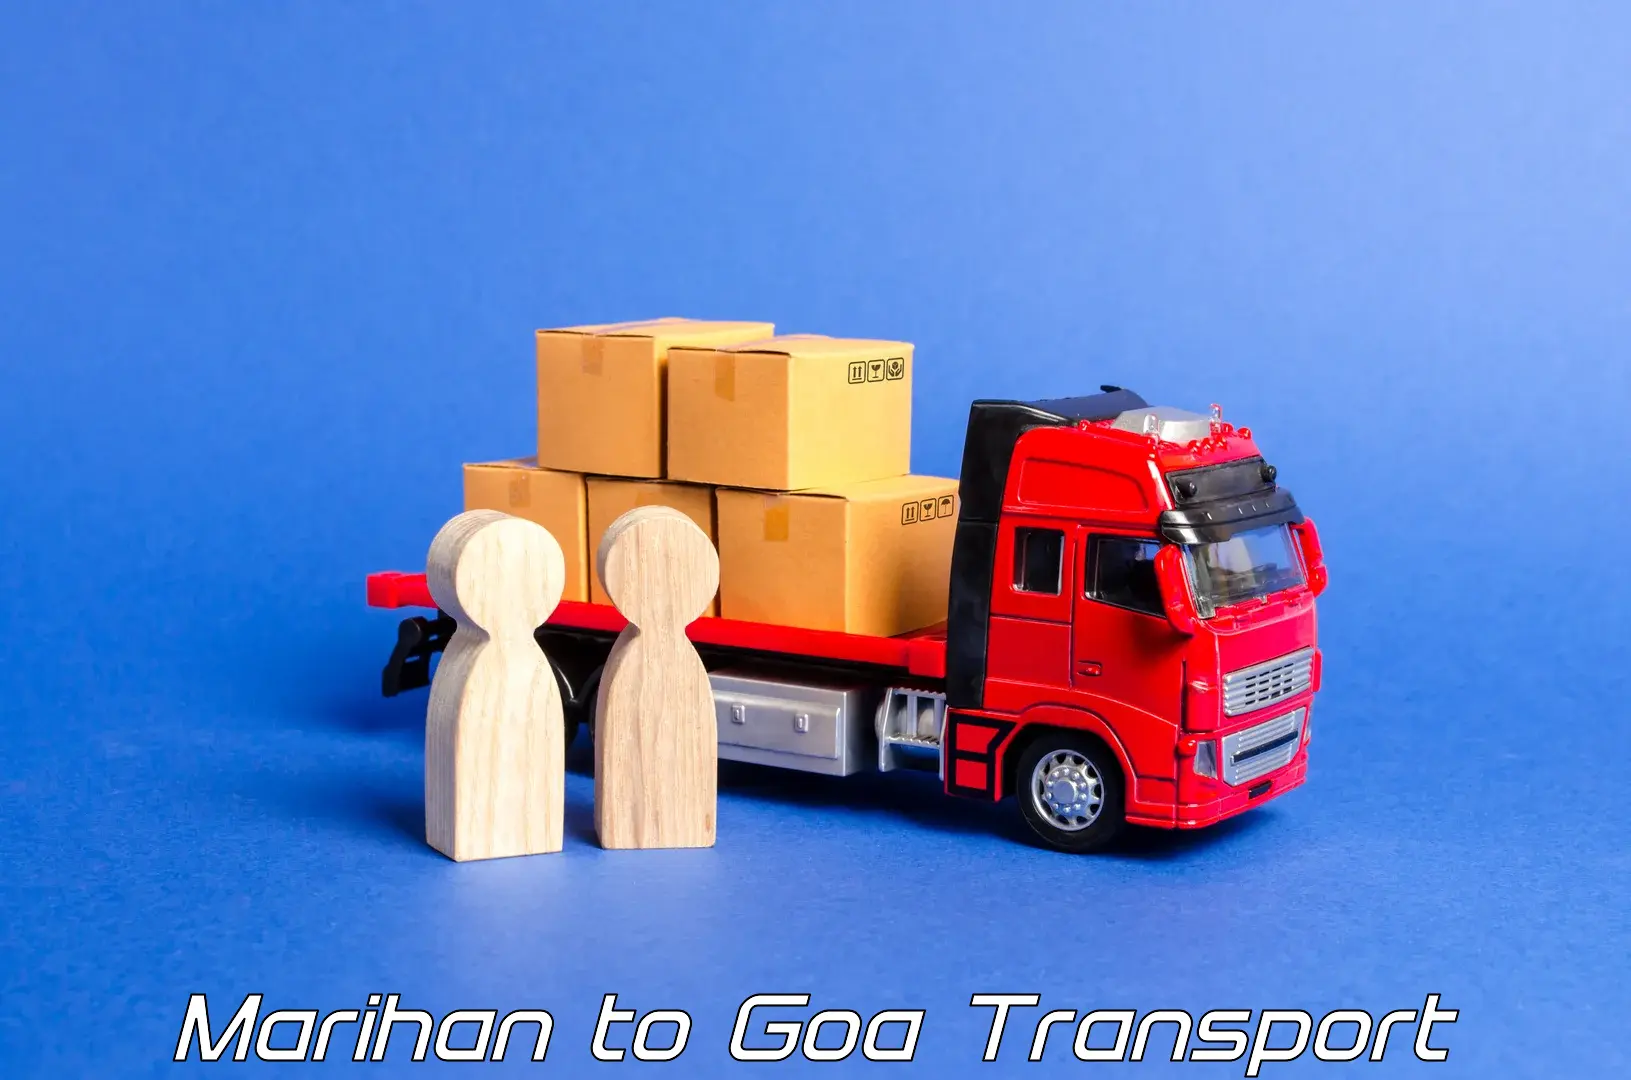 Daily transport service Marihan to Canacona